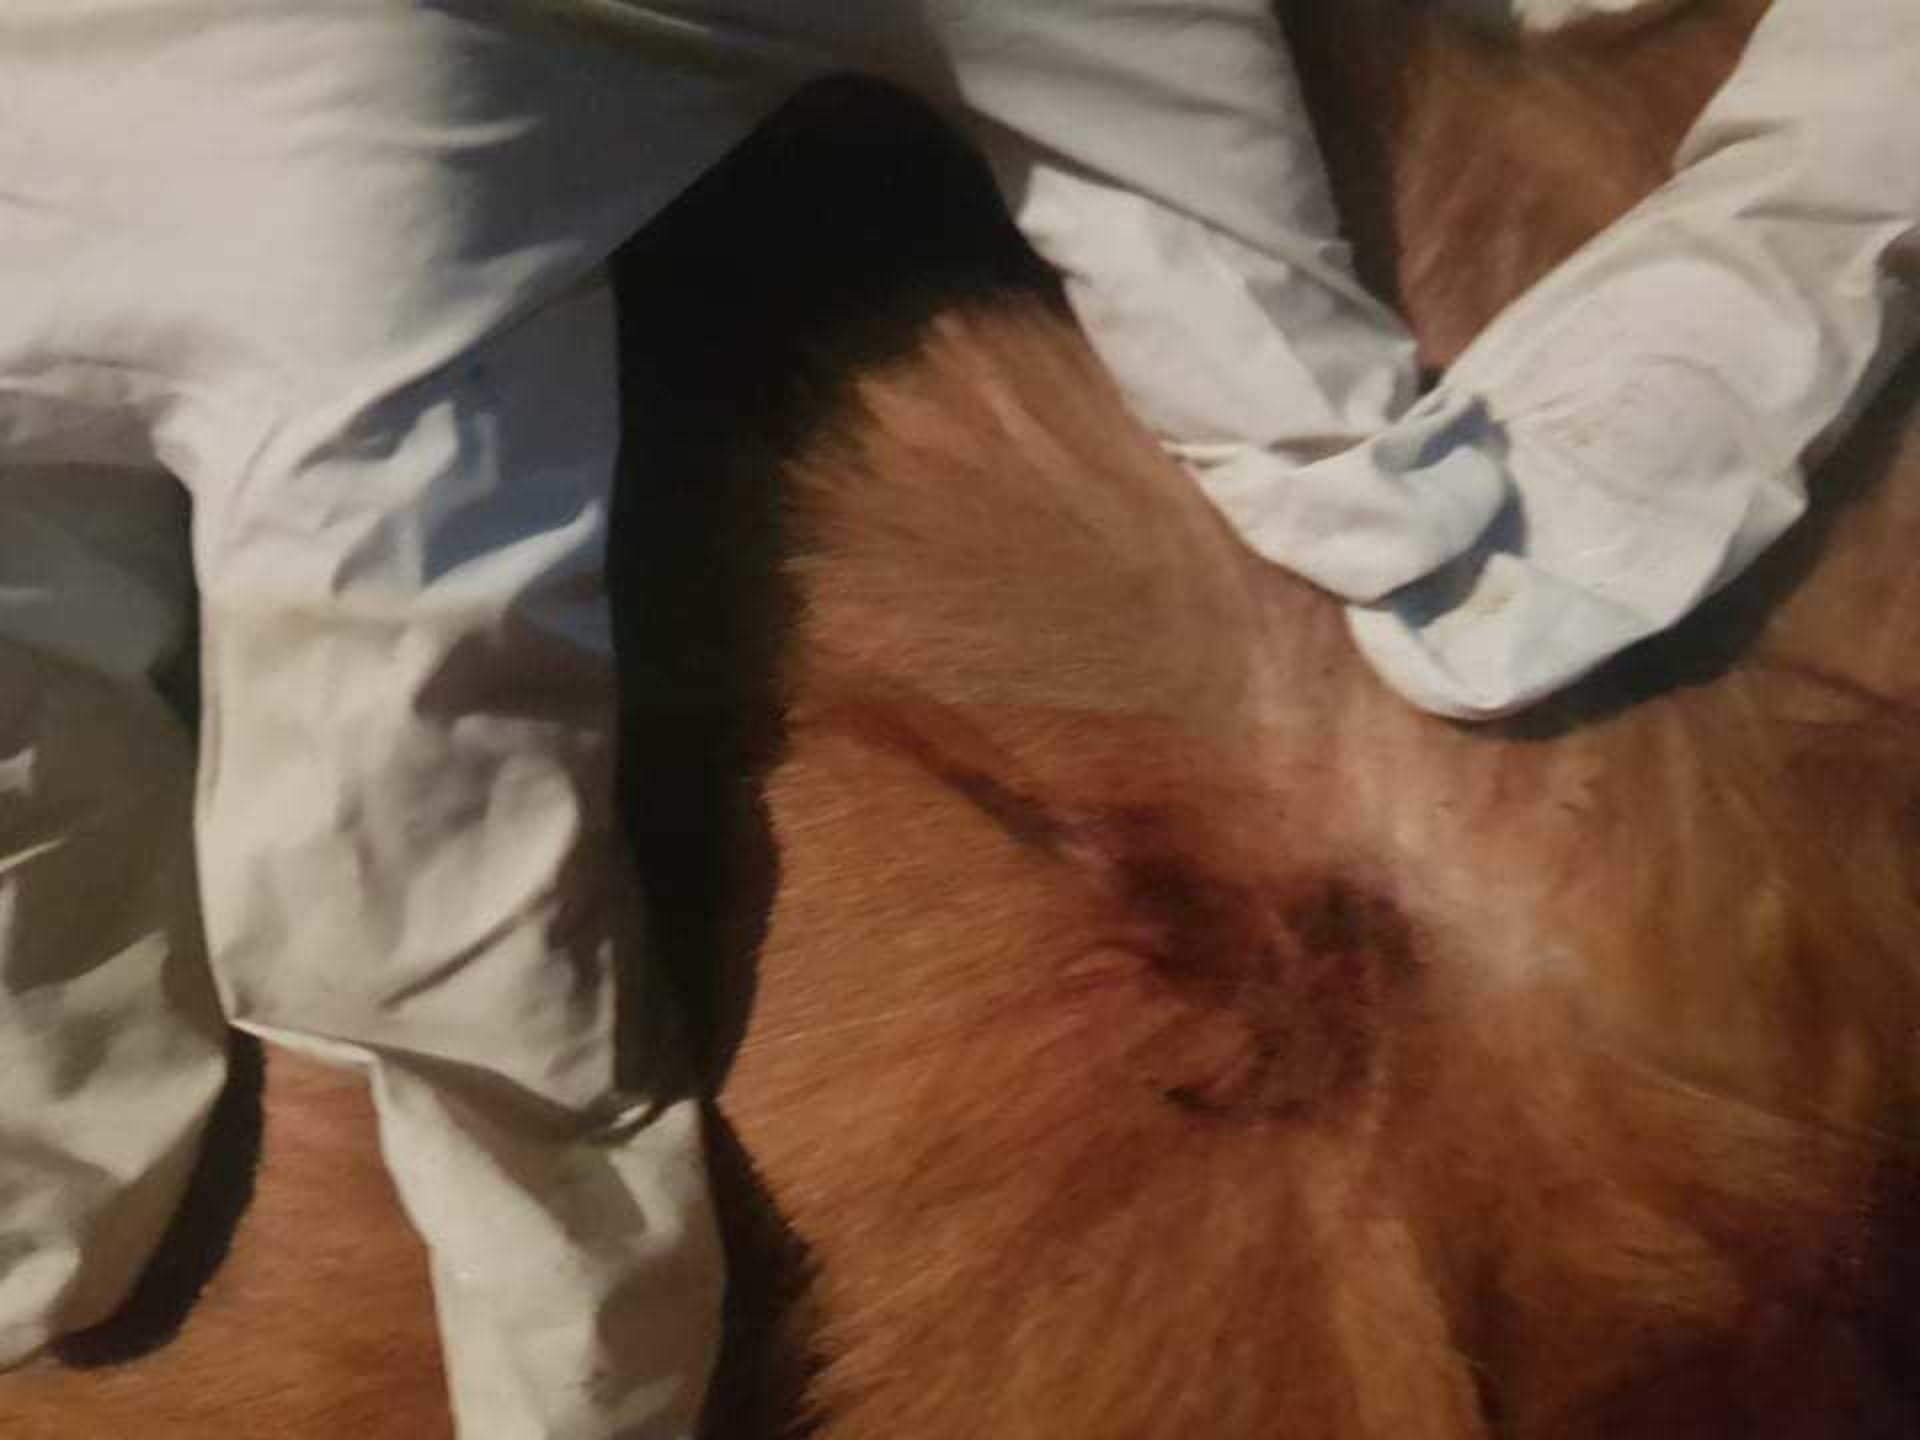 Mrtvého psa na ulici našli sousedé. Majitel psa poté pořídil fotografie místa, kudy měl projektil vniknout do těla. Policii to ale jako důkaz nestačí.